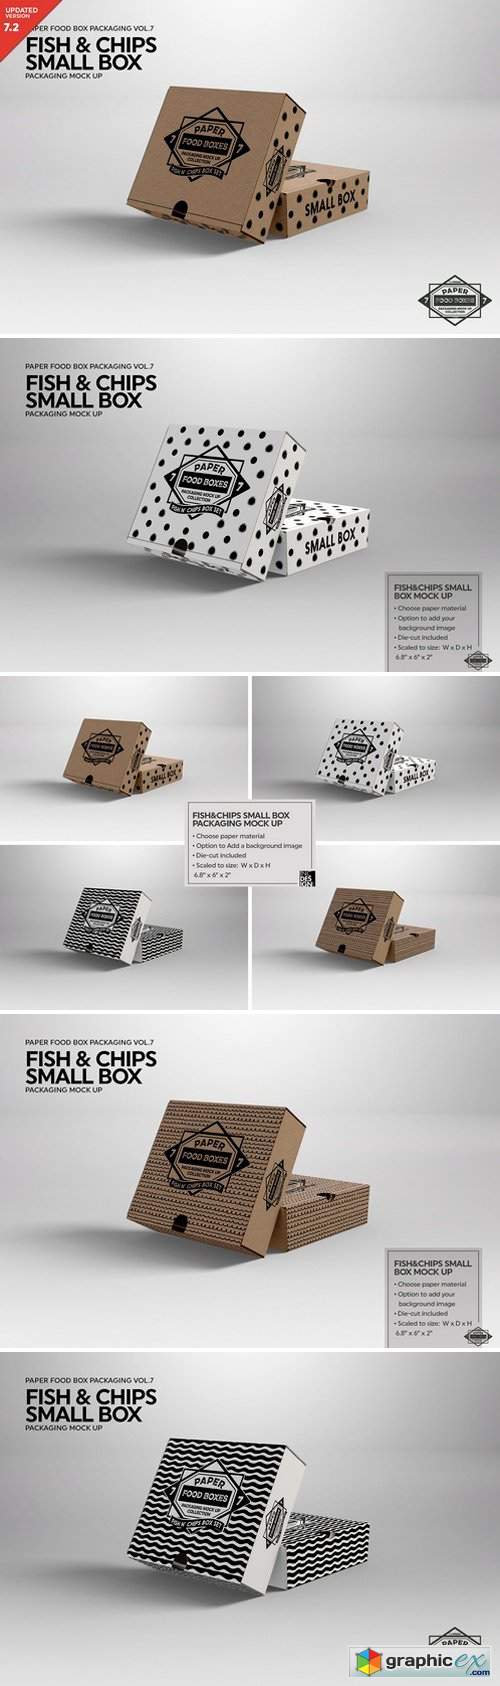 Small Fish and Chips Box Mockup